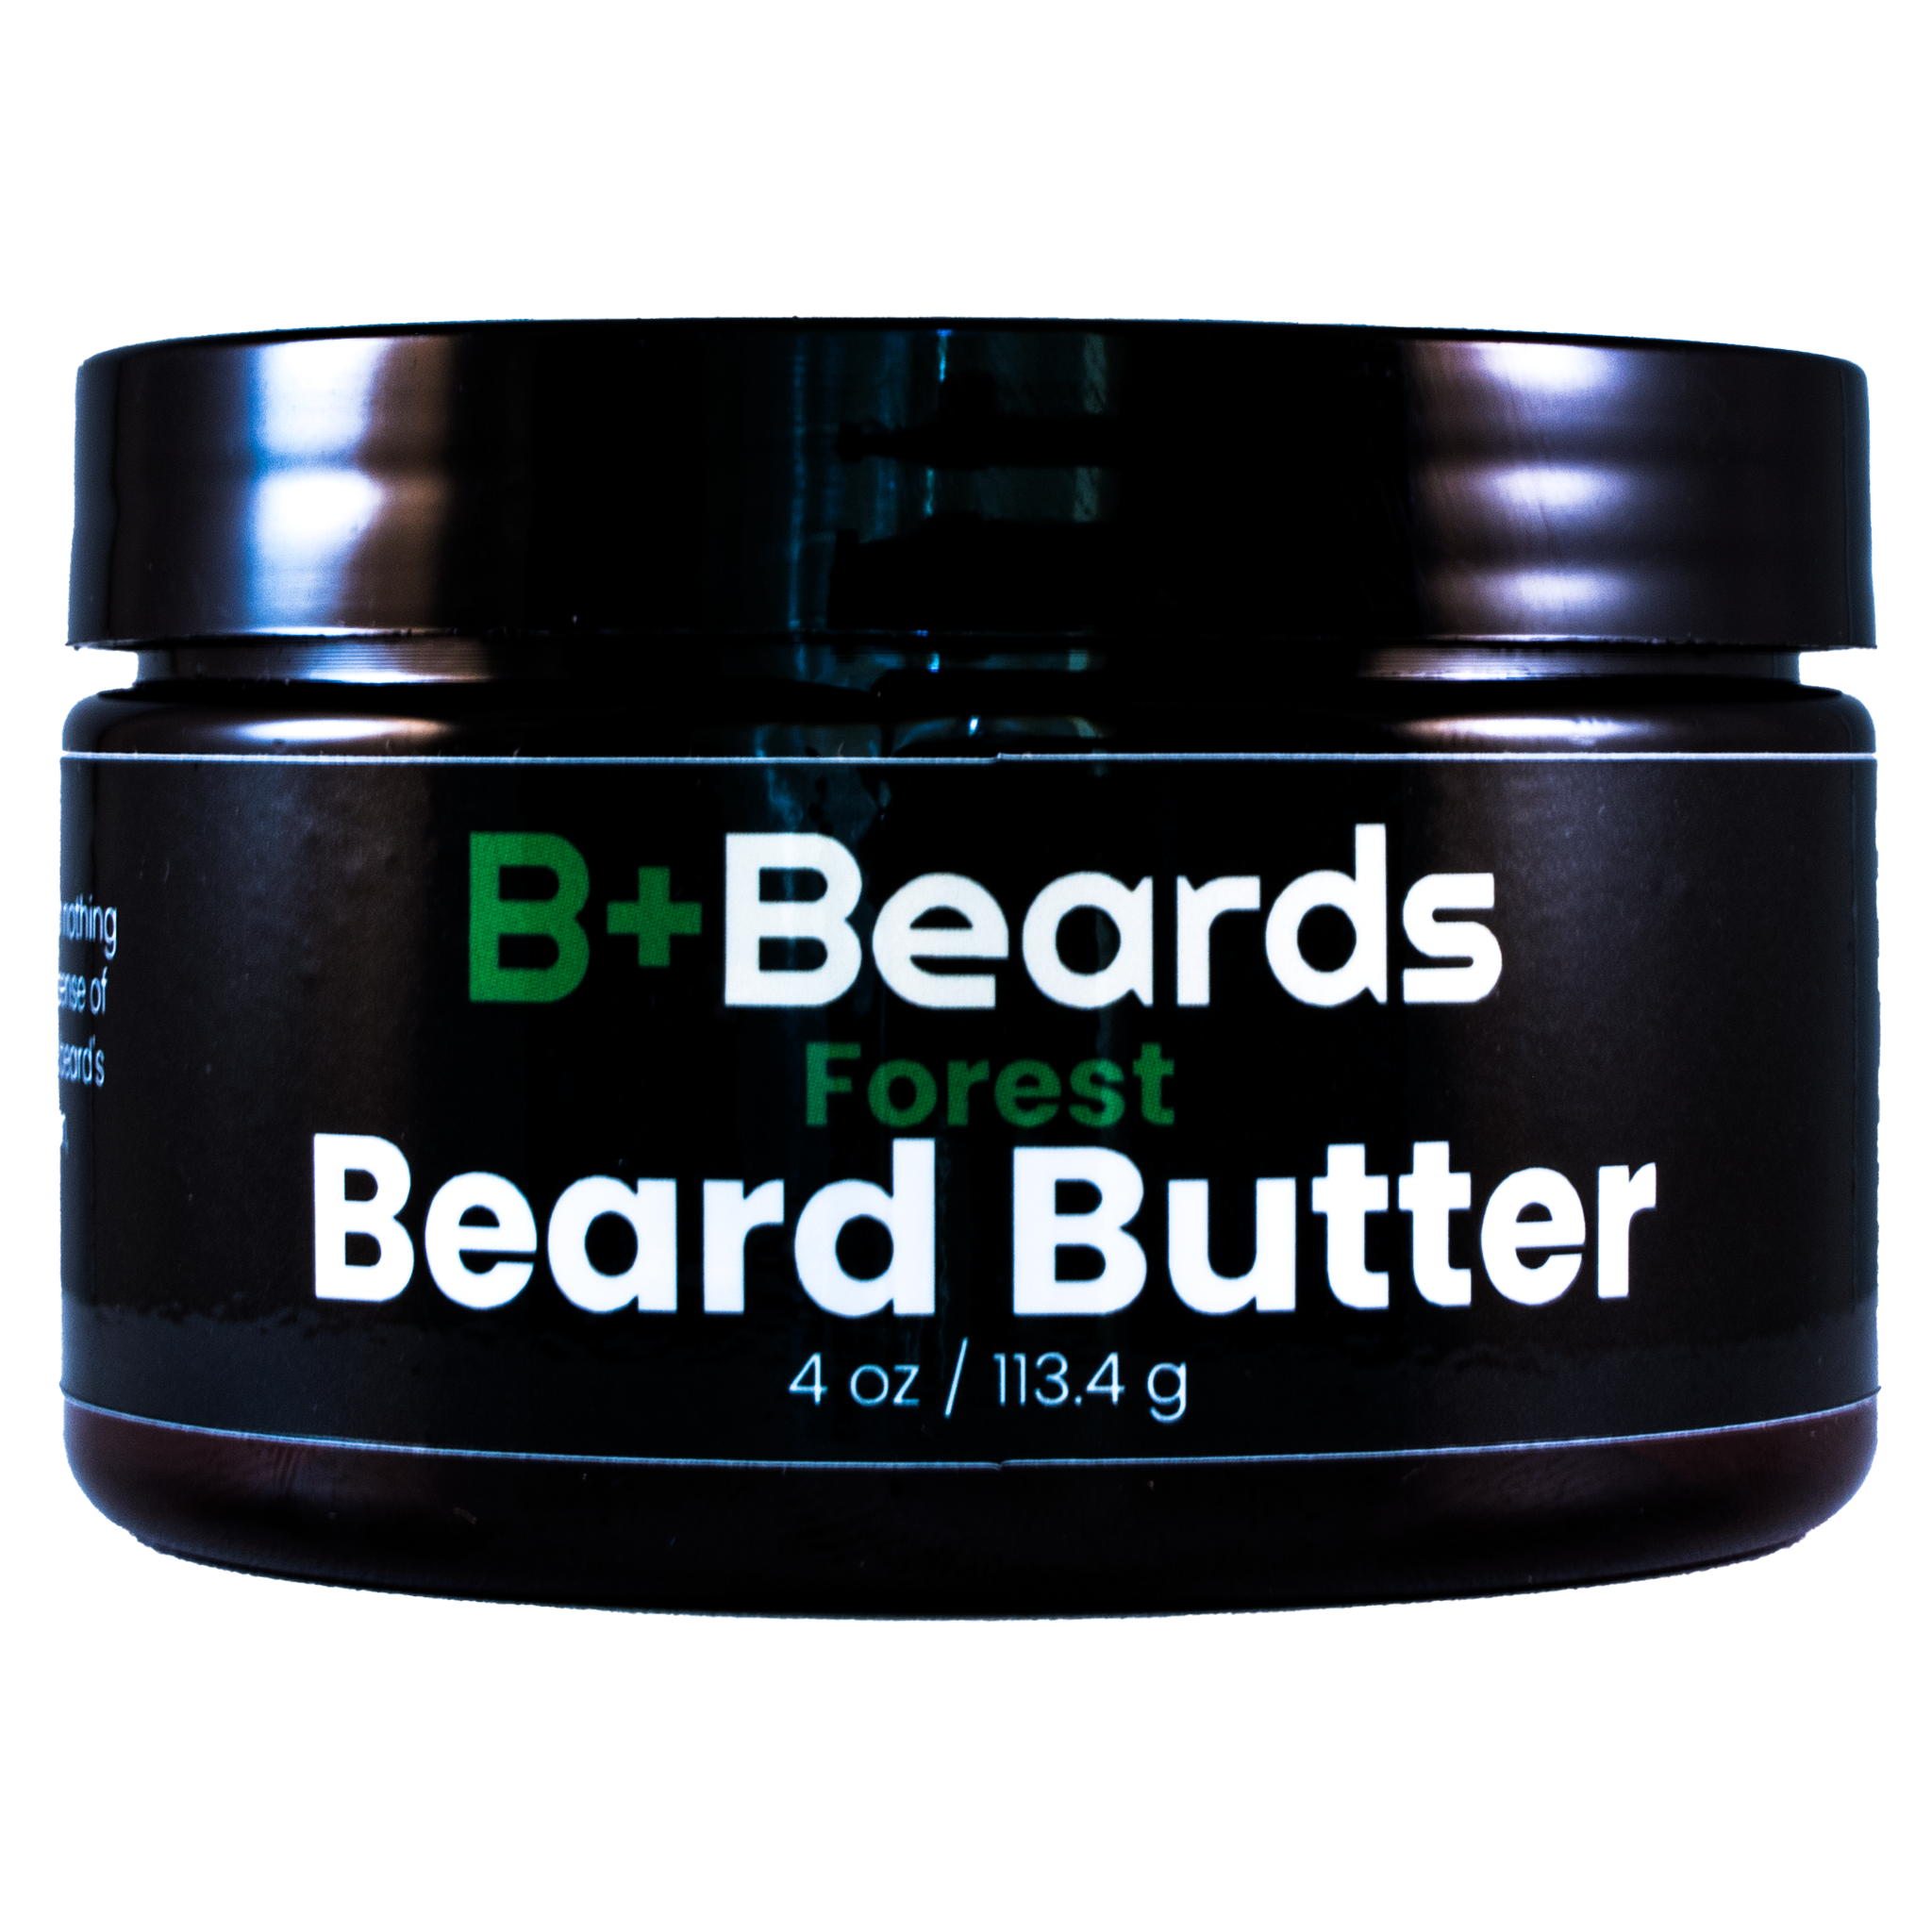 Forest Beard Butter